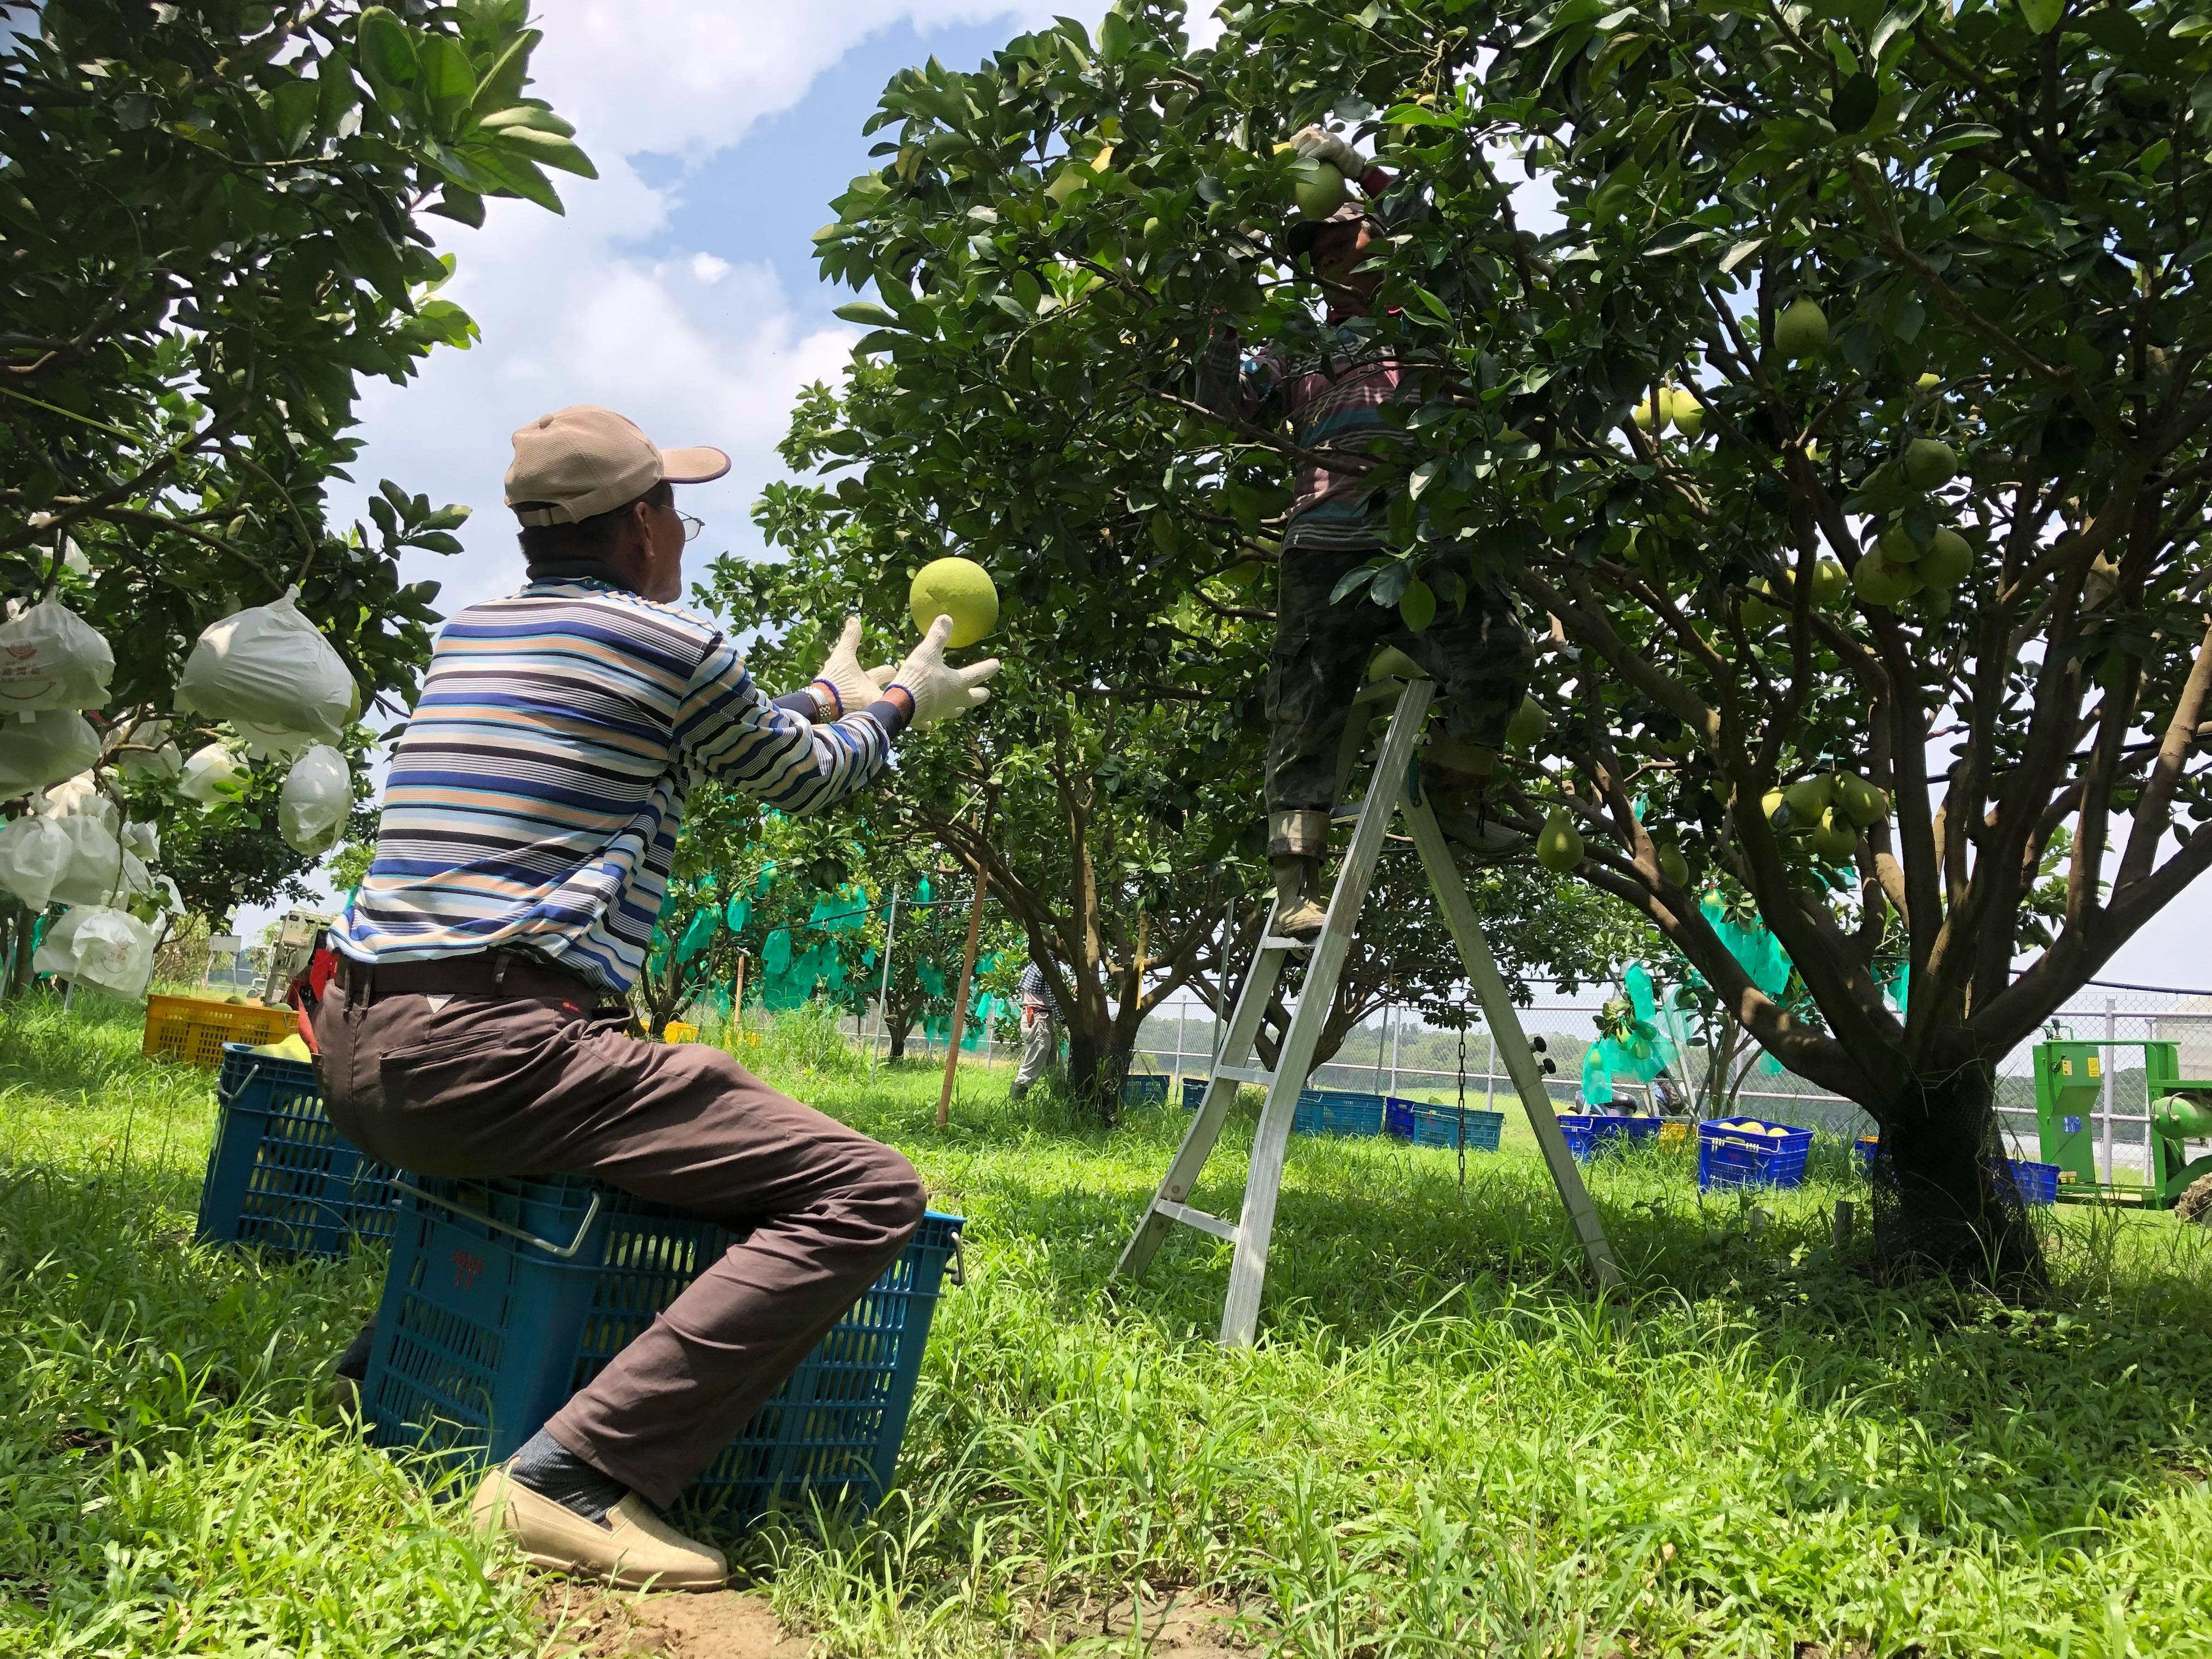 傳統人工2人進行柚子採收作業模式： 1人攀梯，1人接果實